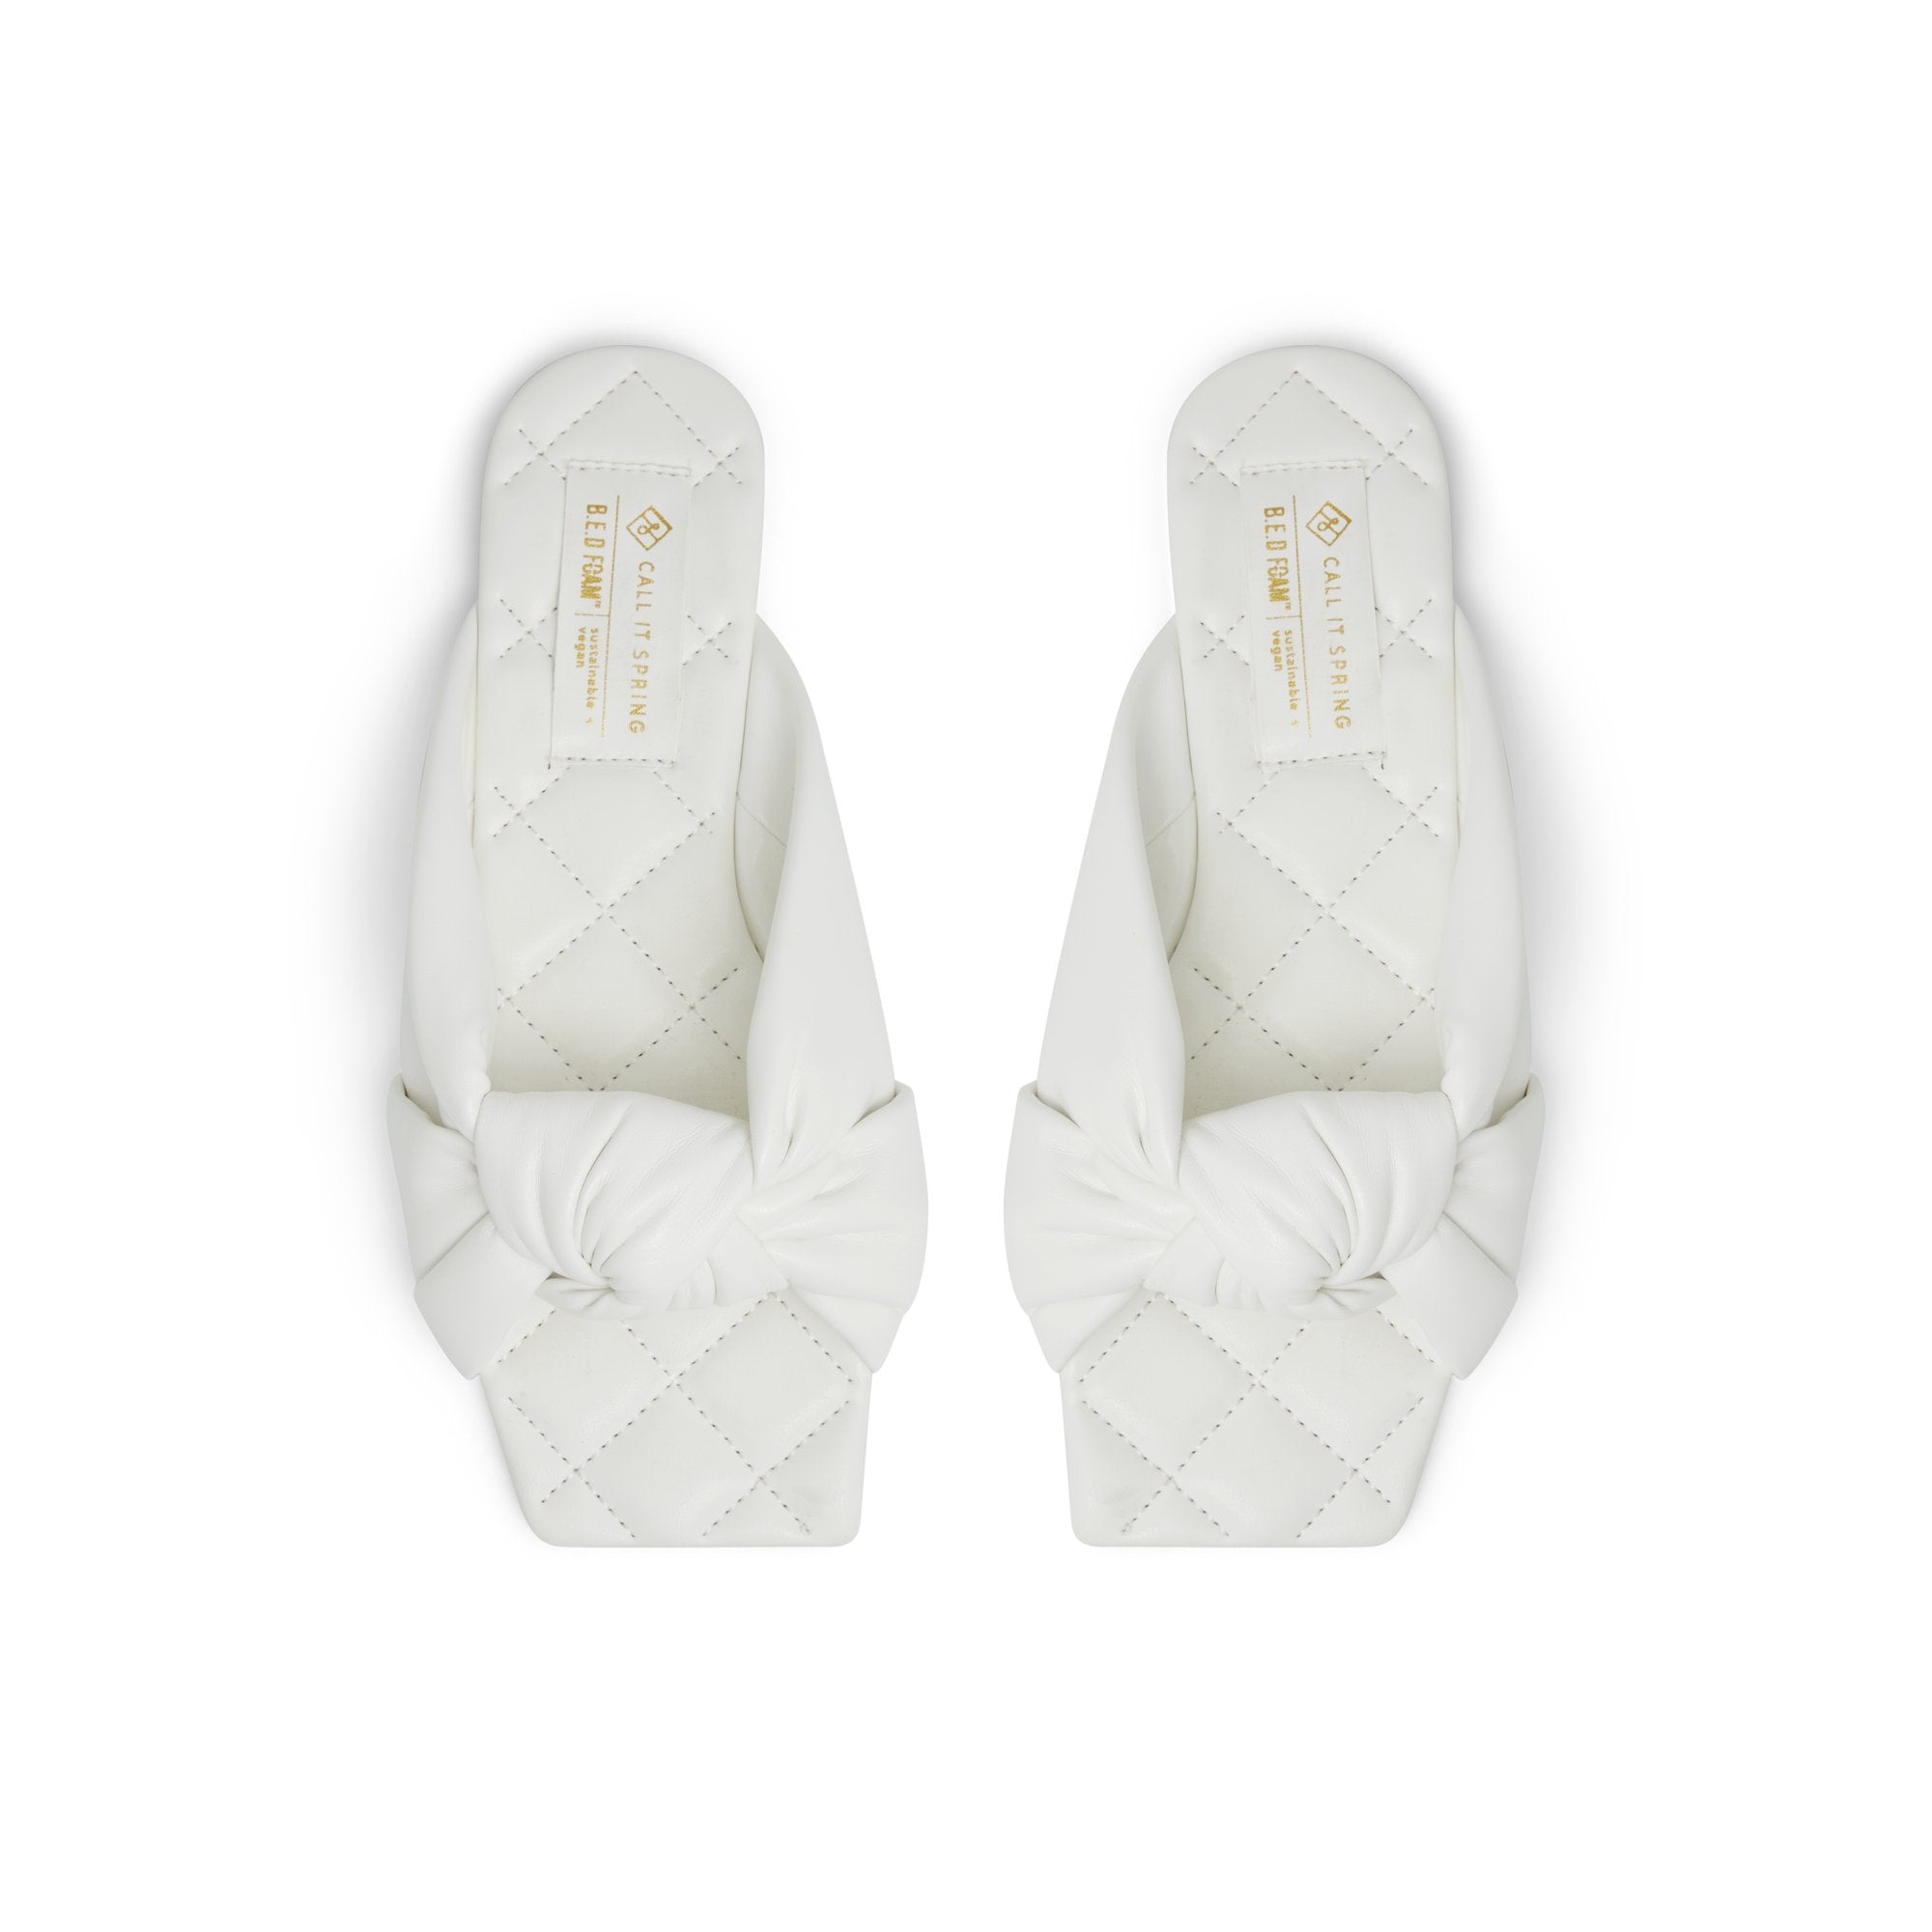 Simeoni Women Shoes - White - CALL IT SPRING KSA